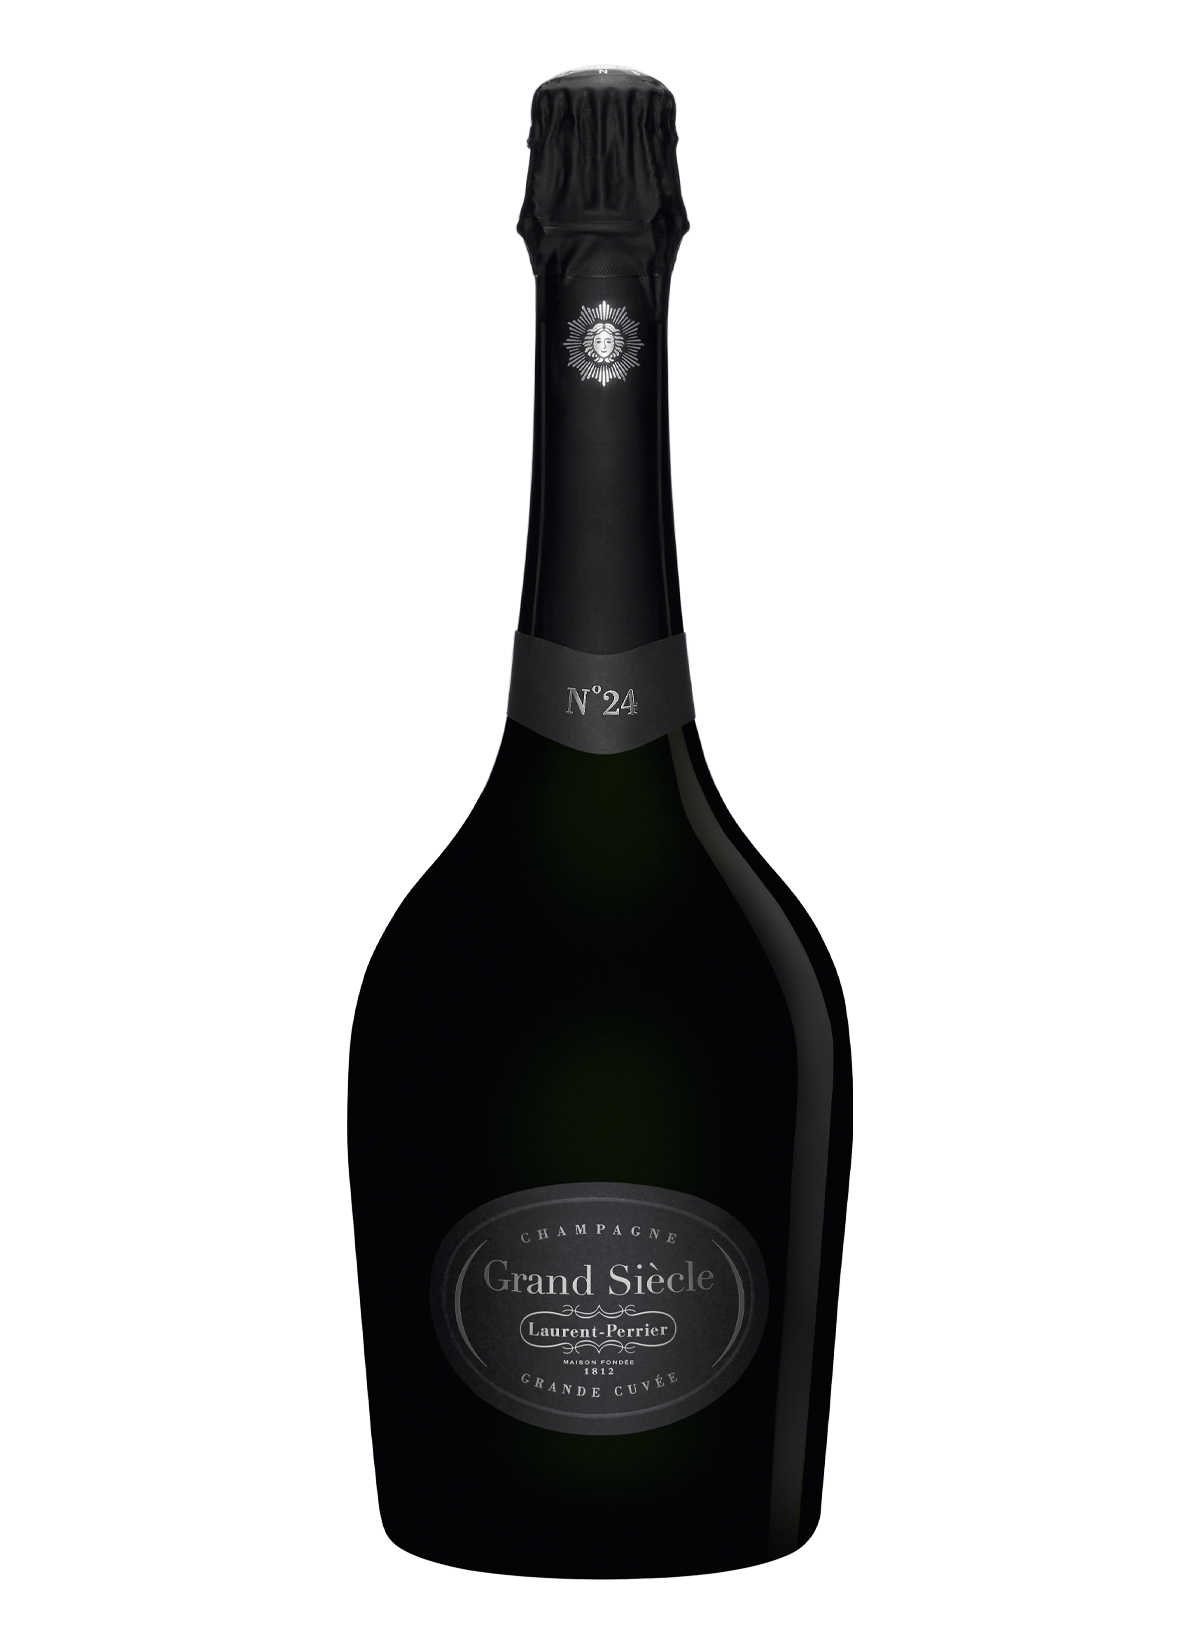 Champagne Gran Siecle n°24 - Laurent Perrier